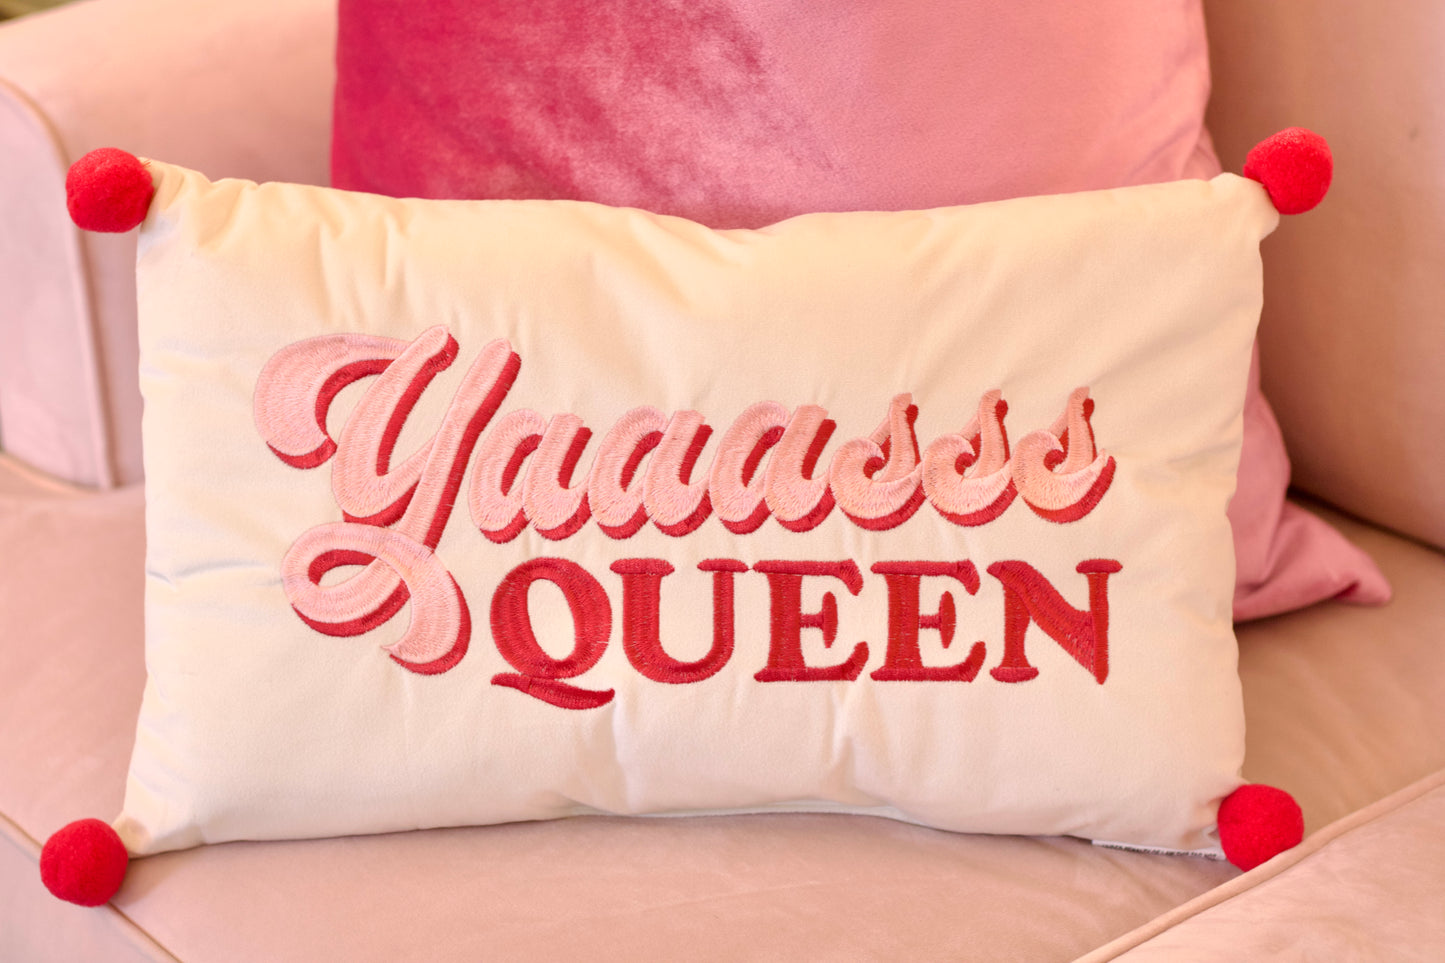 Yas Queen Pillow